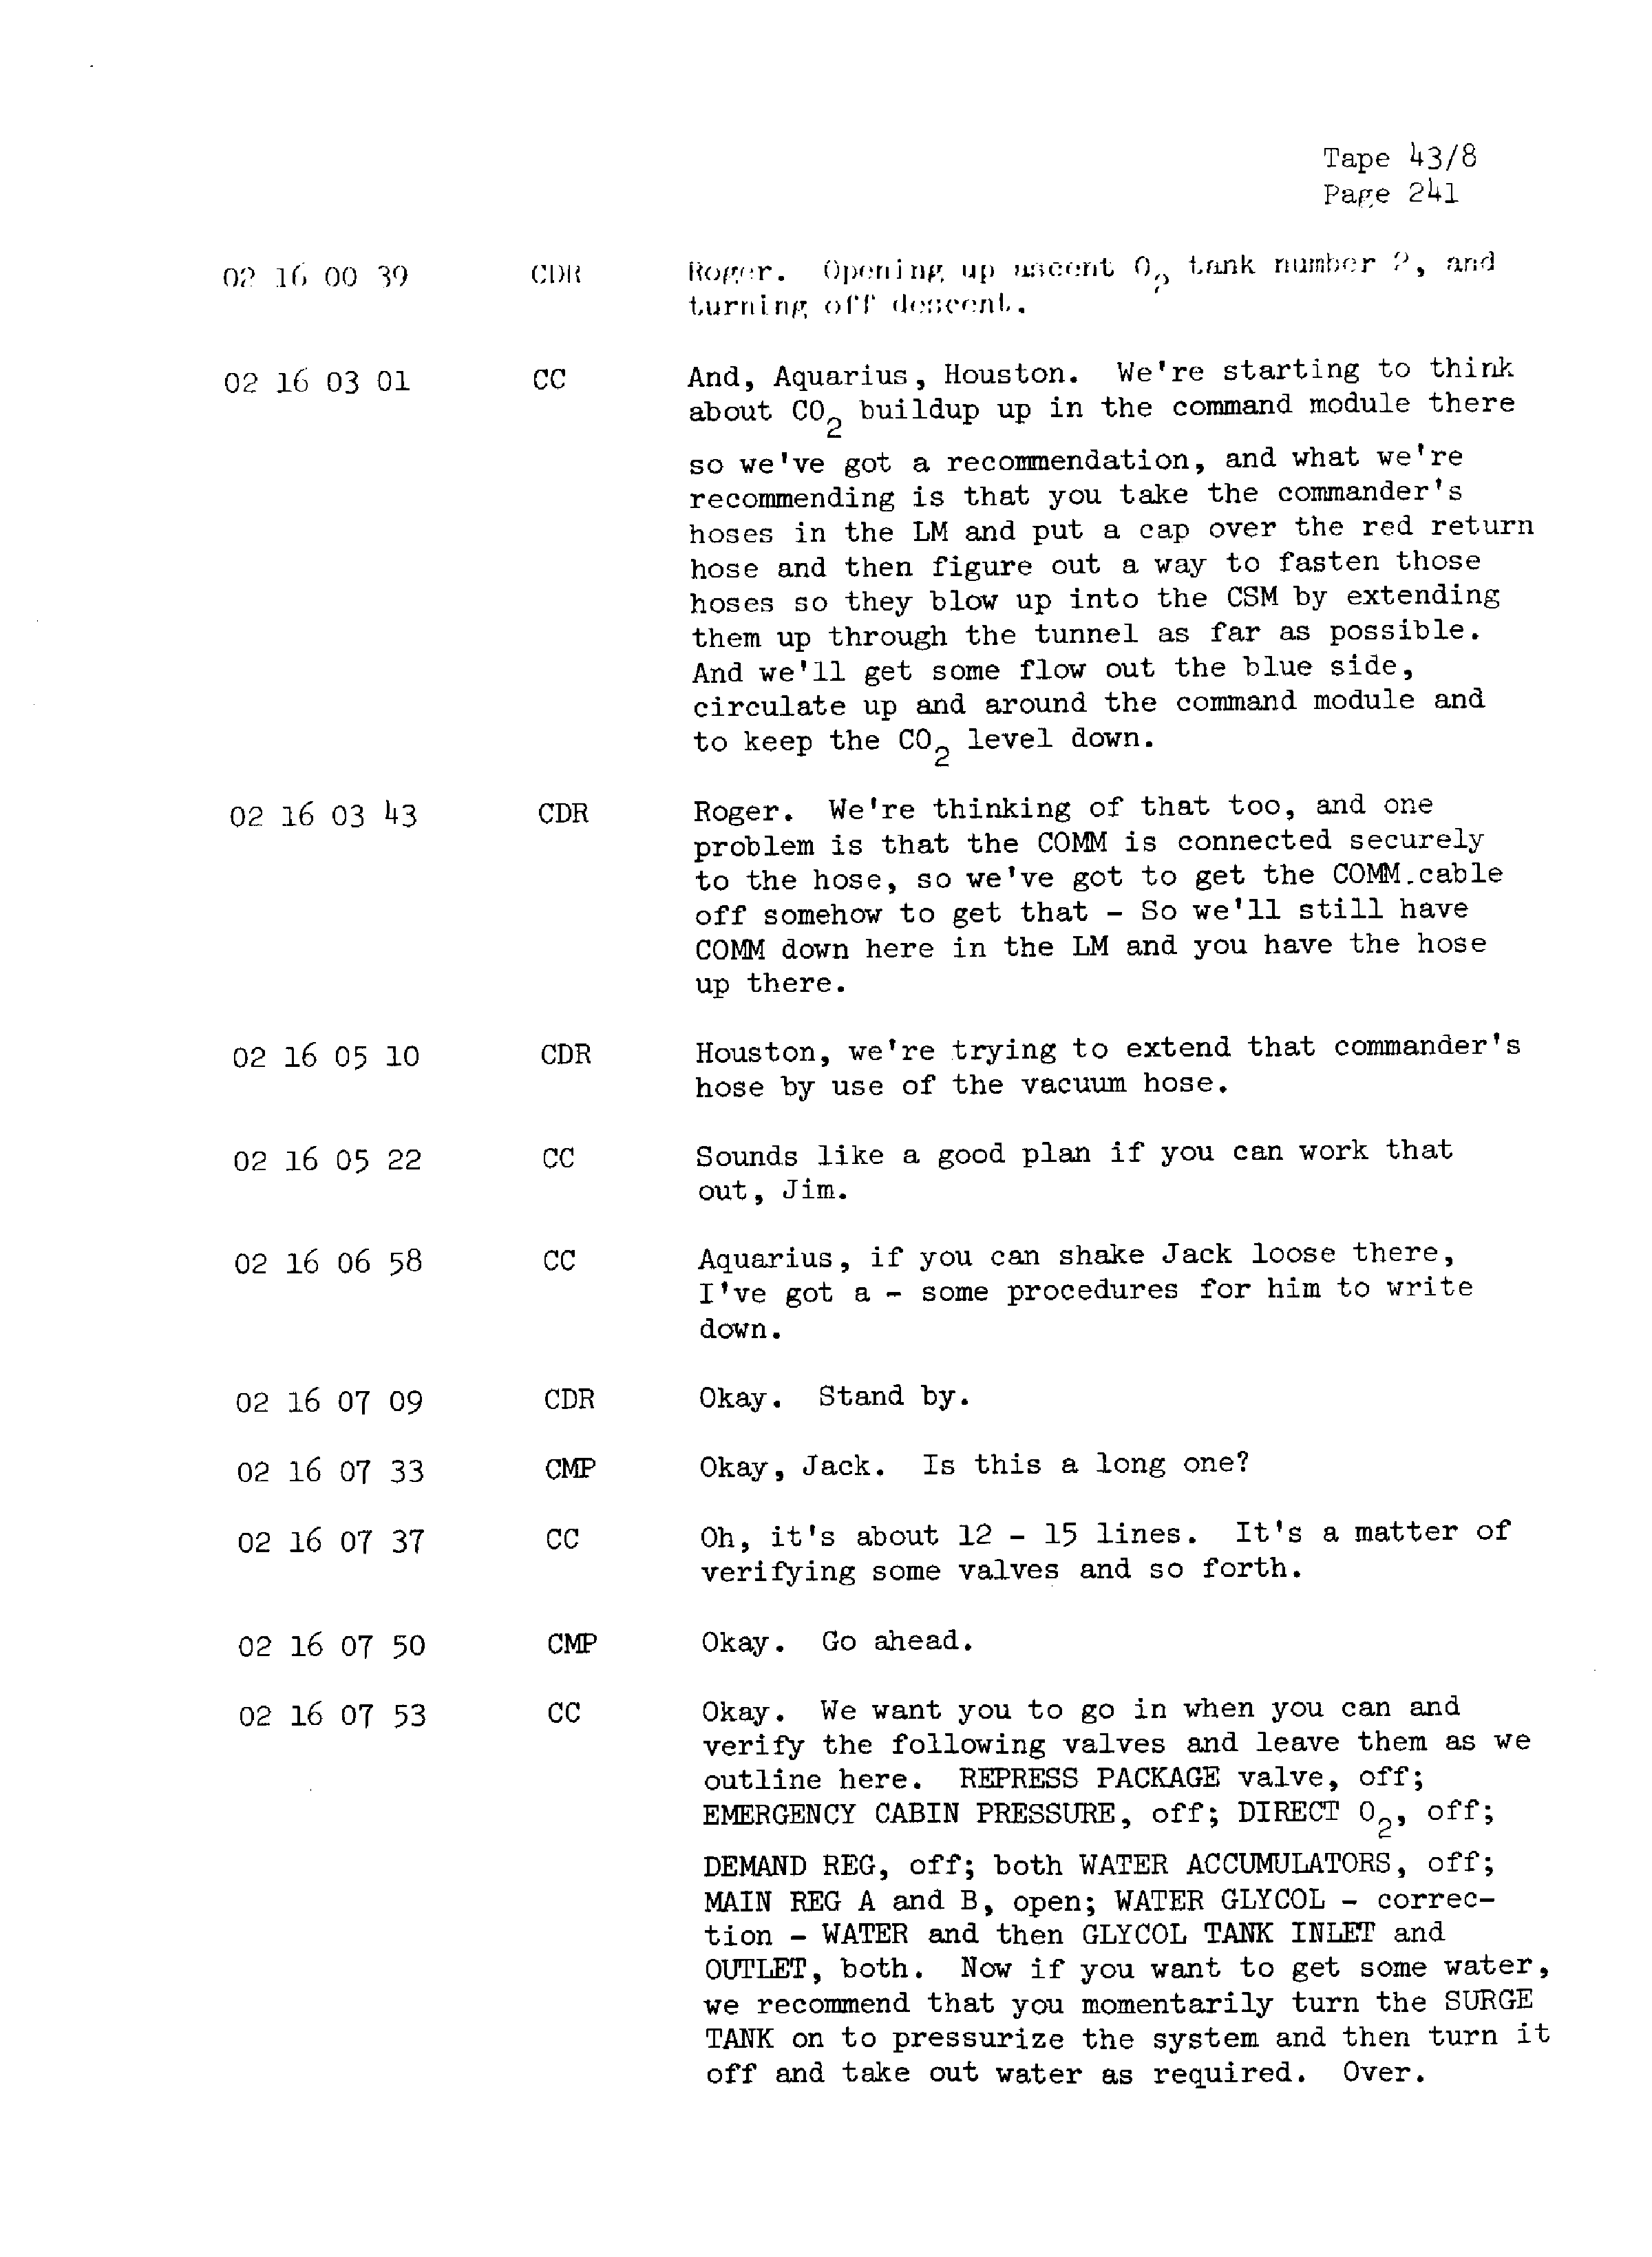 Page 248 of Apollo 13’s original transcript